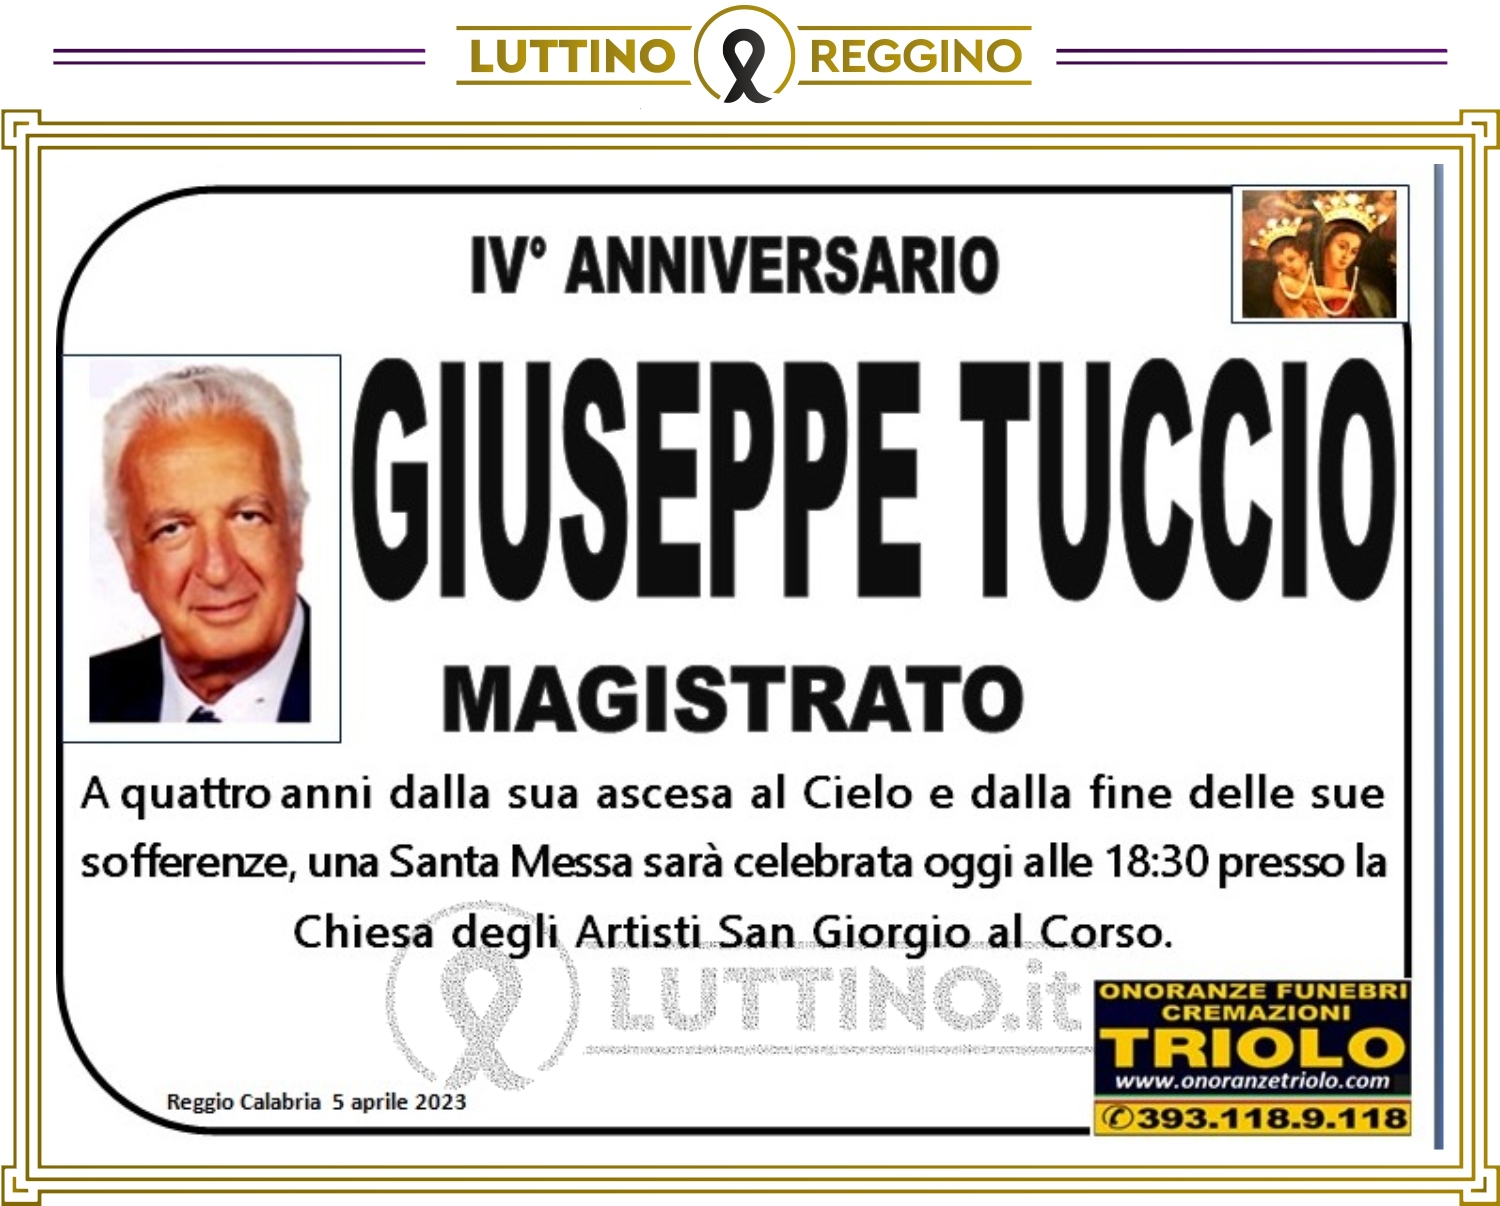 Giuseppe Tuccio